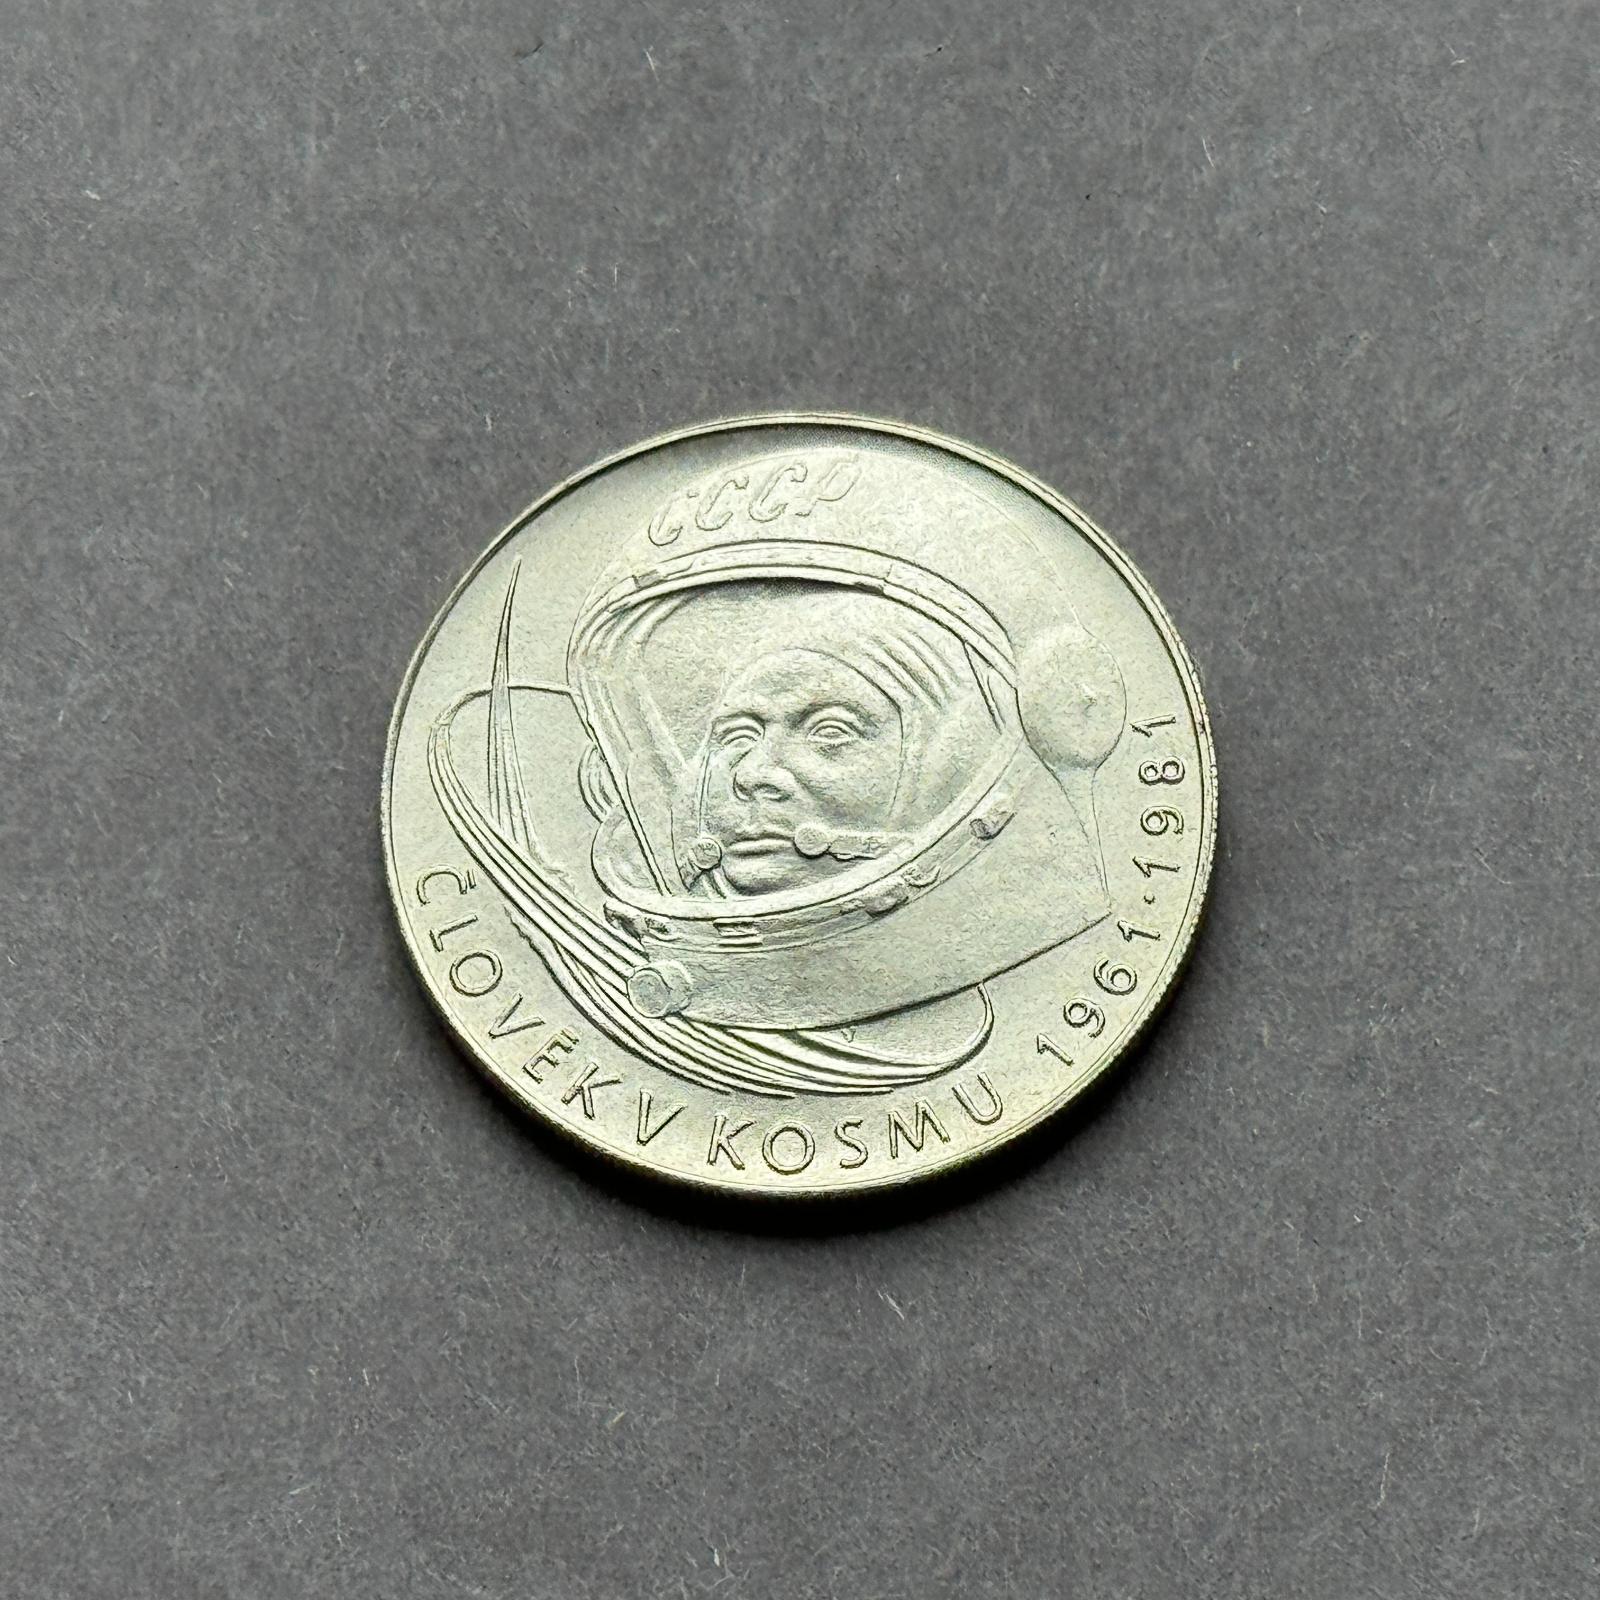 Strieborná minca , 100 Kčs človek v kozme 1981 - S 240406/02 - Numizmatika